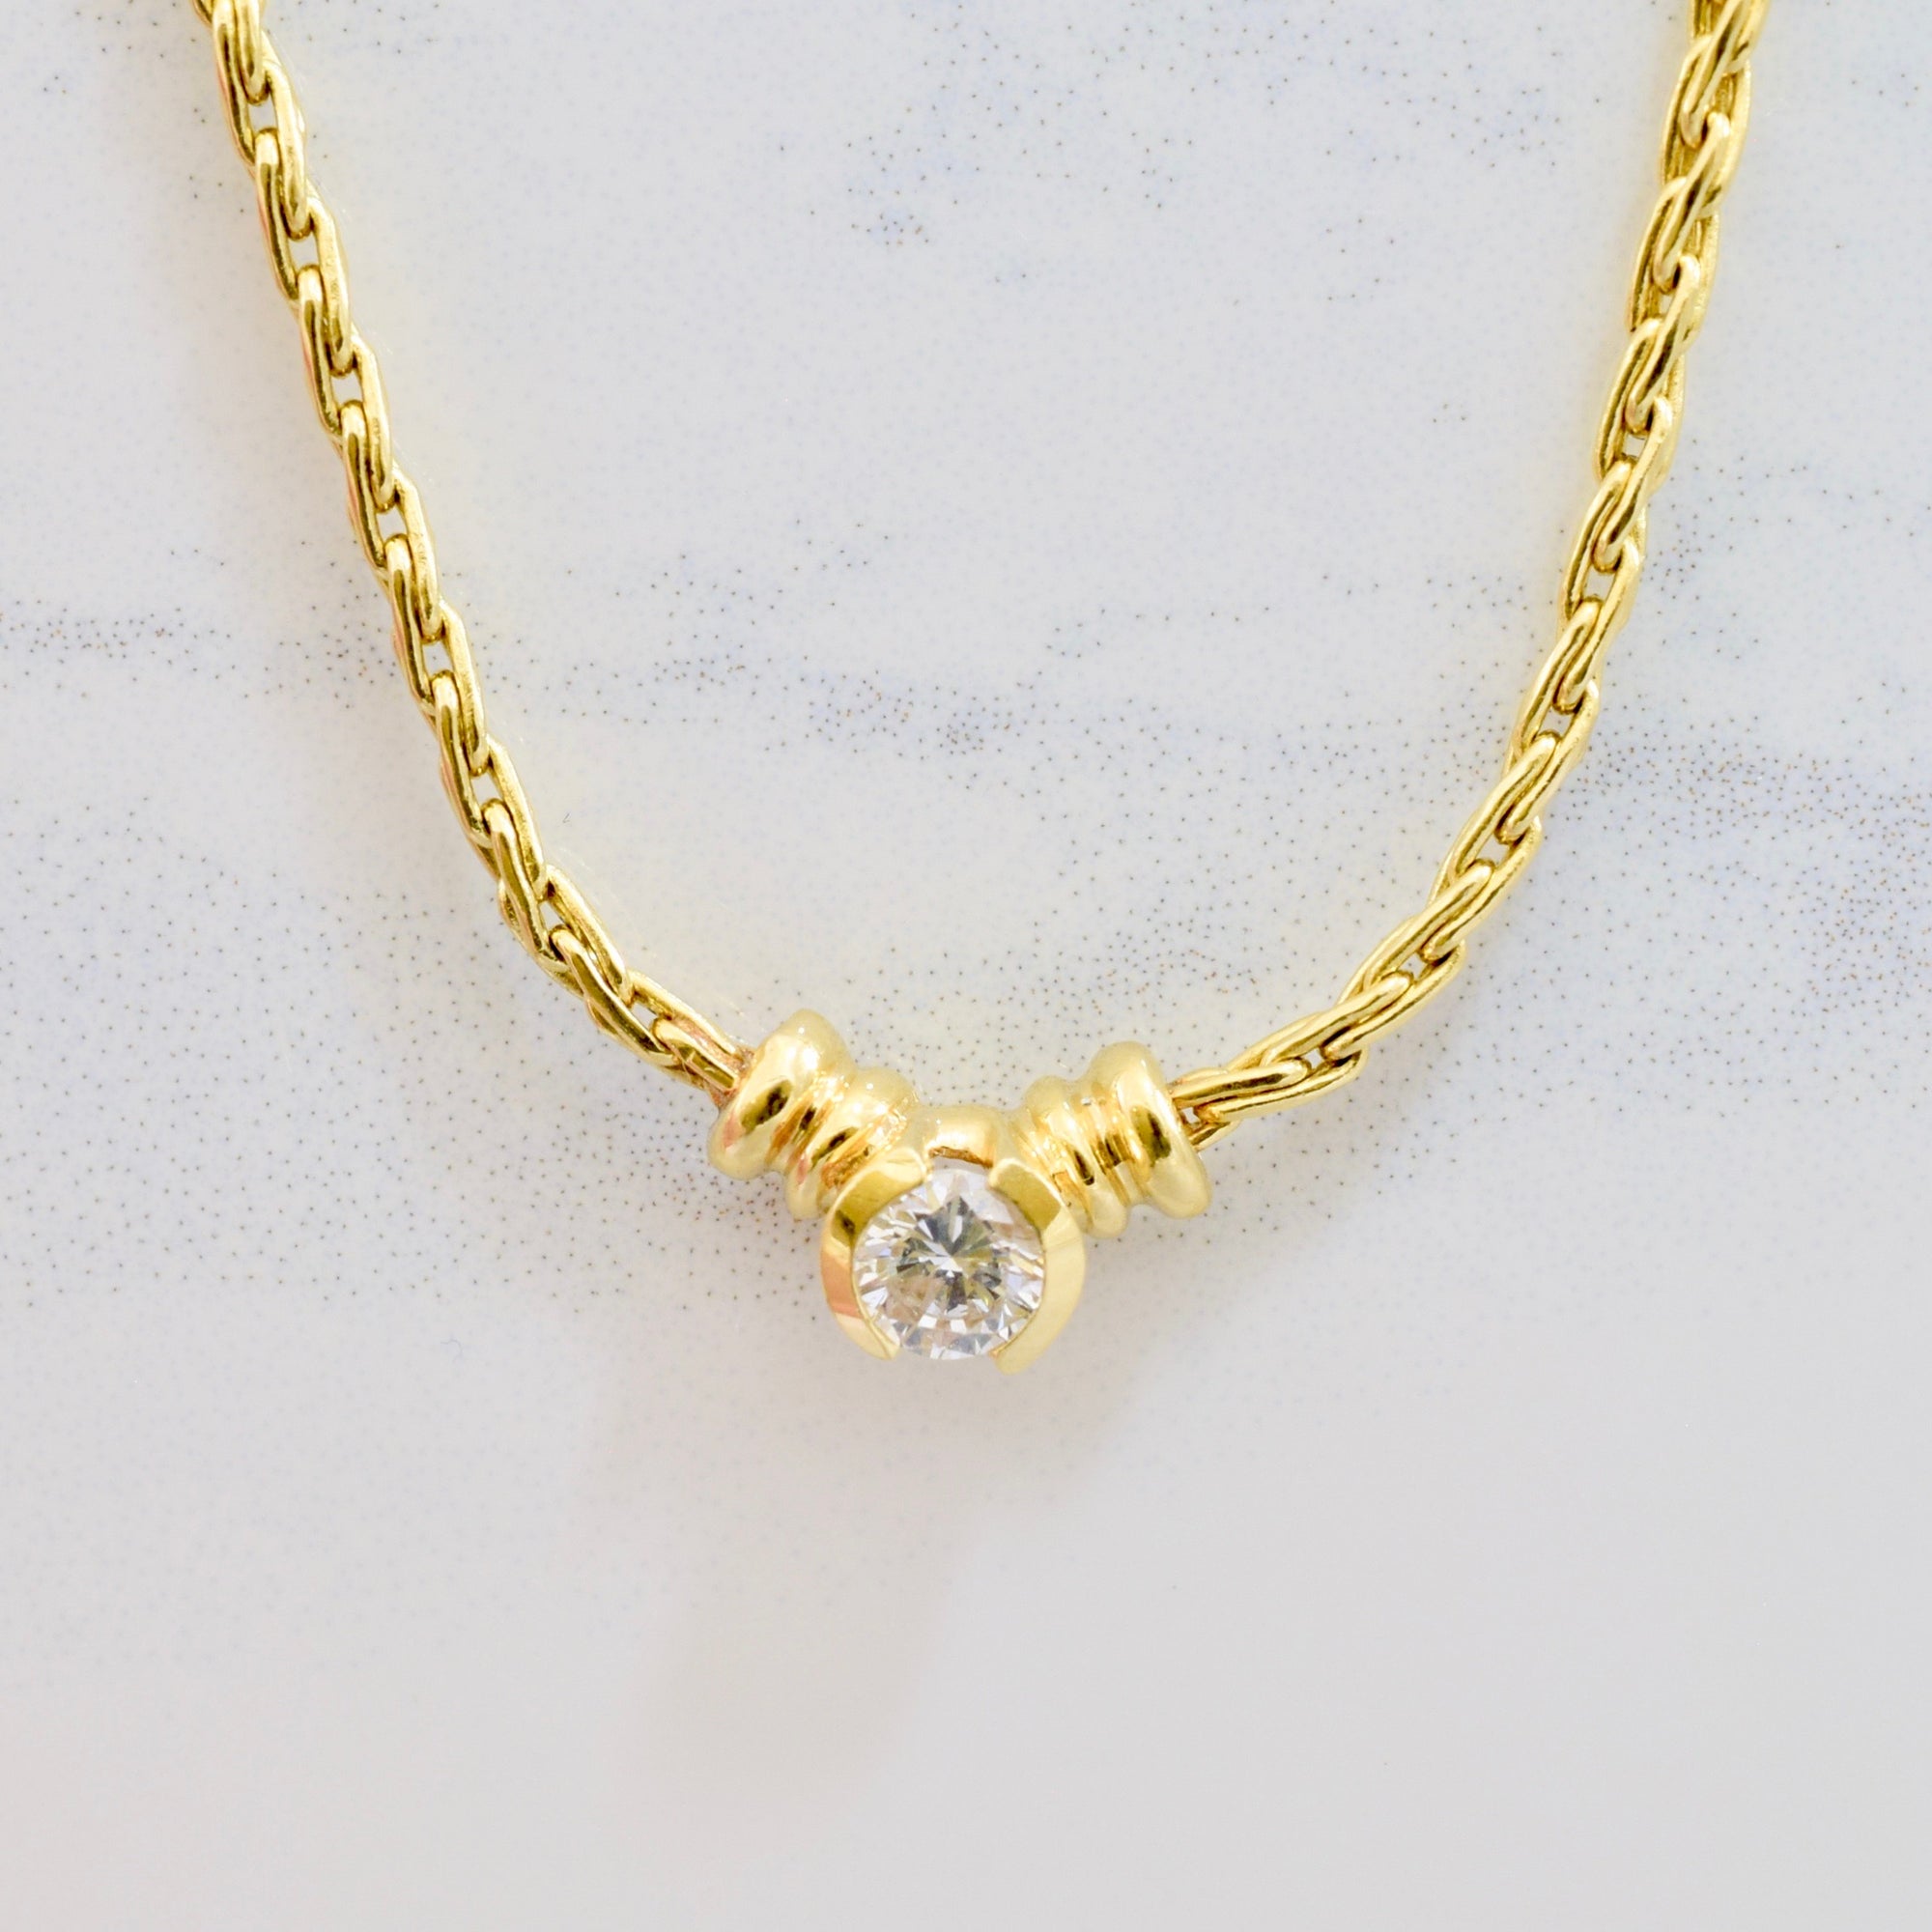 Half Bezel Set Diamond Necklace | 0.24 ct SZ 16